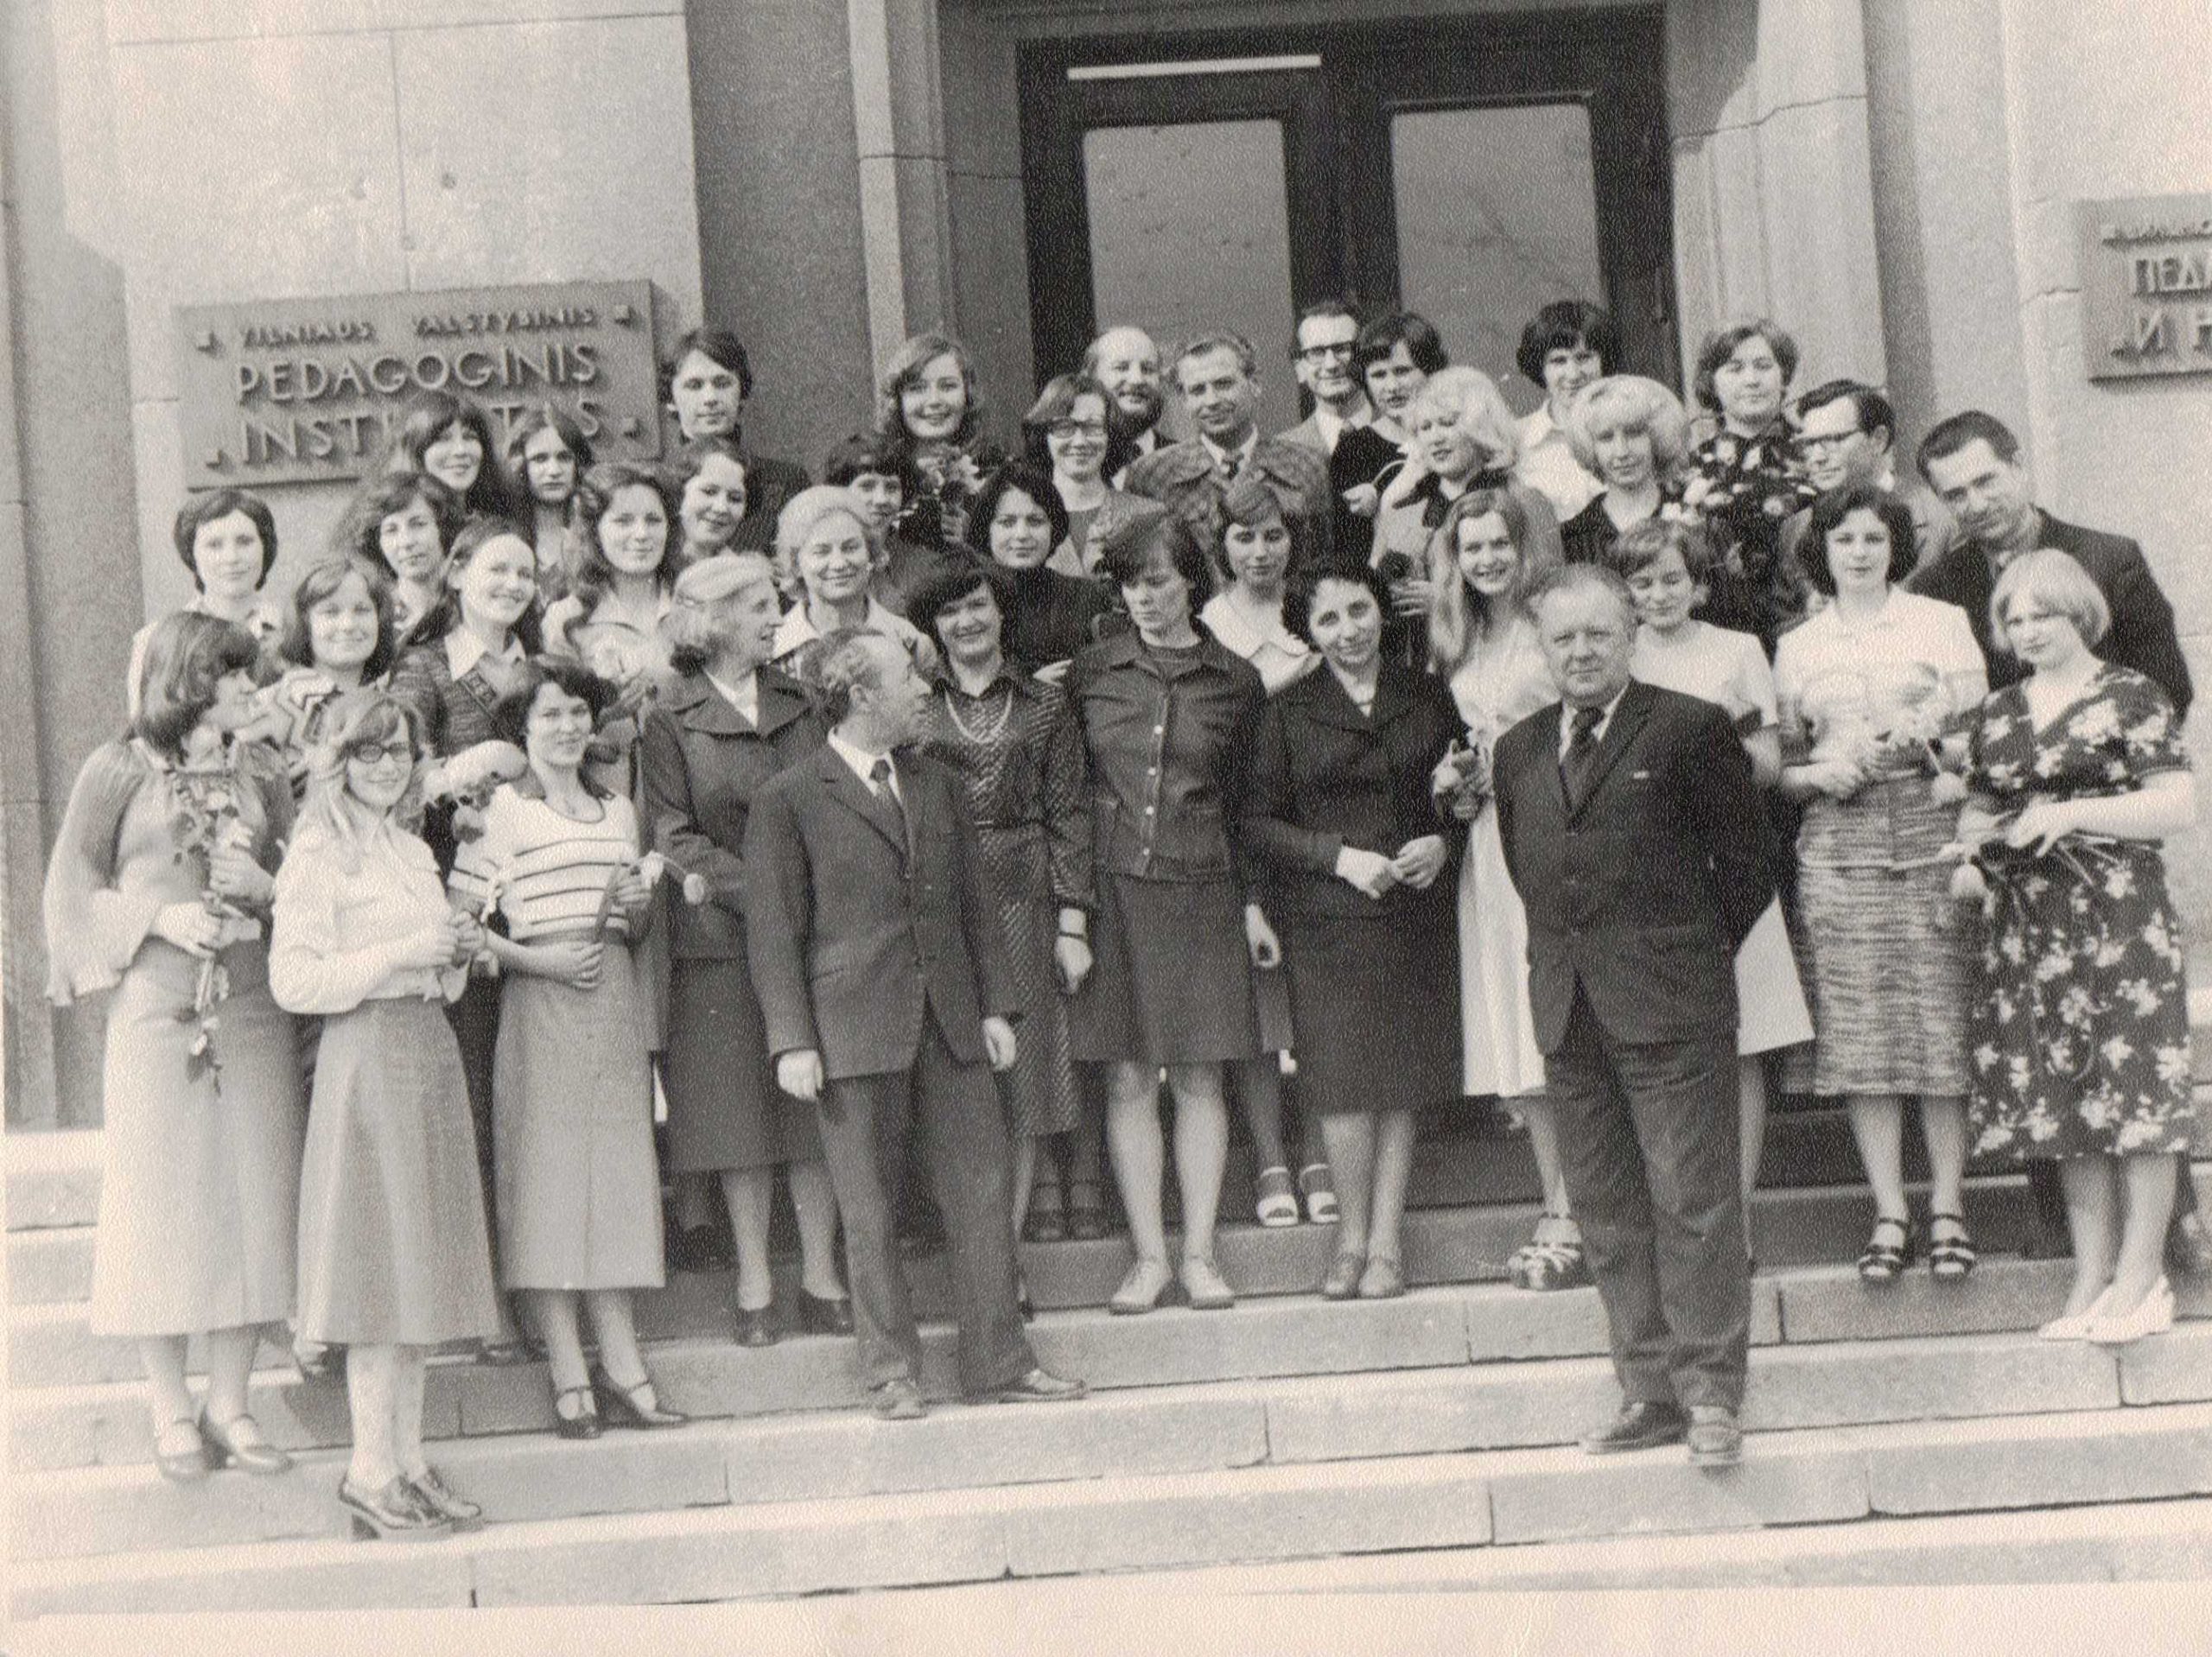 Vilniaus pedagoginio instituto lituanistų paskutinis skambučio šventė 1978.04.21. V. Zaborskaitė – pirmoje eilėje penkta iš dešinės. MLLM 132843